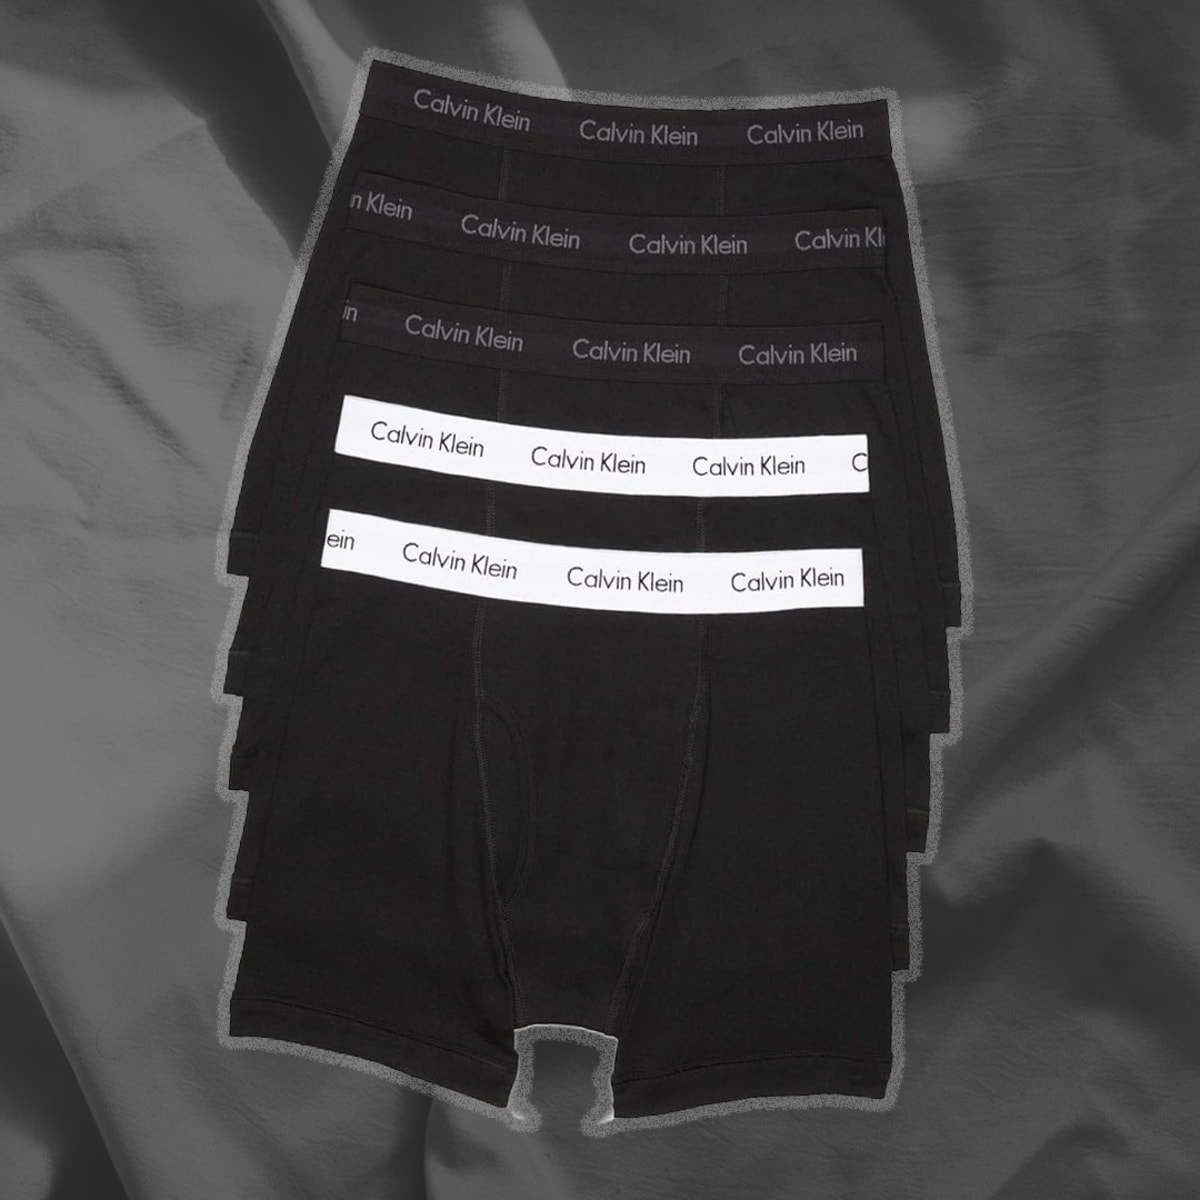 Calvin Klein Cotton Regular Size XL Boxer Shorts Underwear for Men for sale